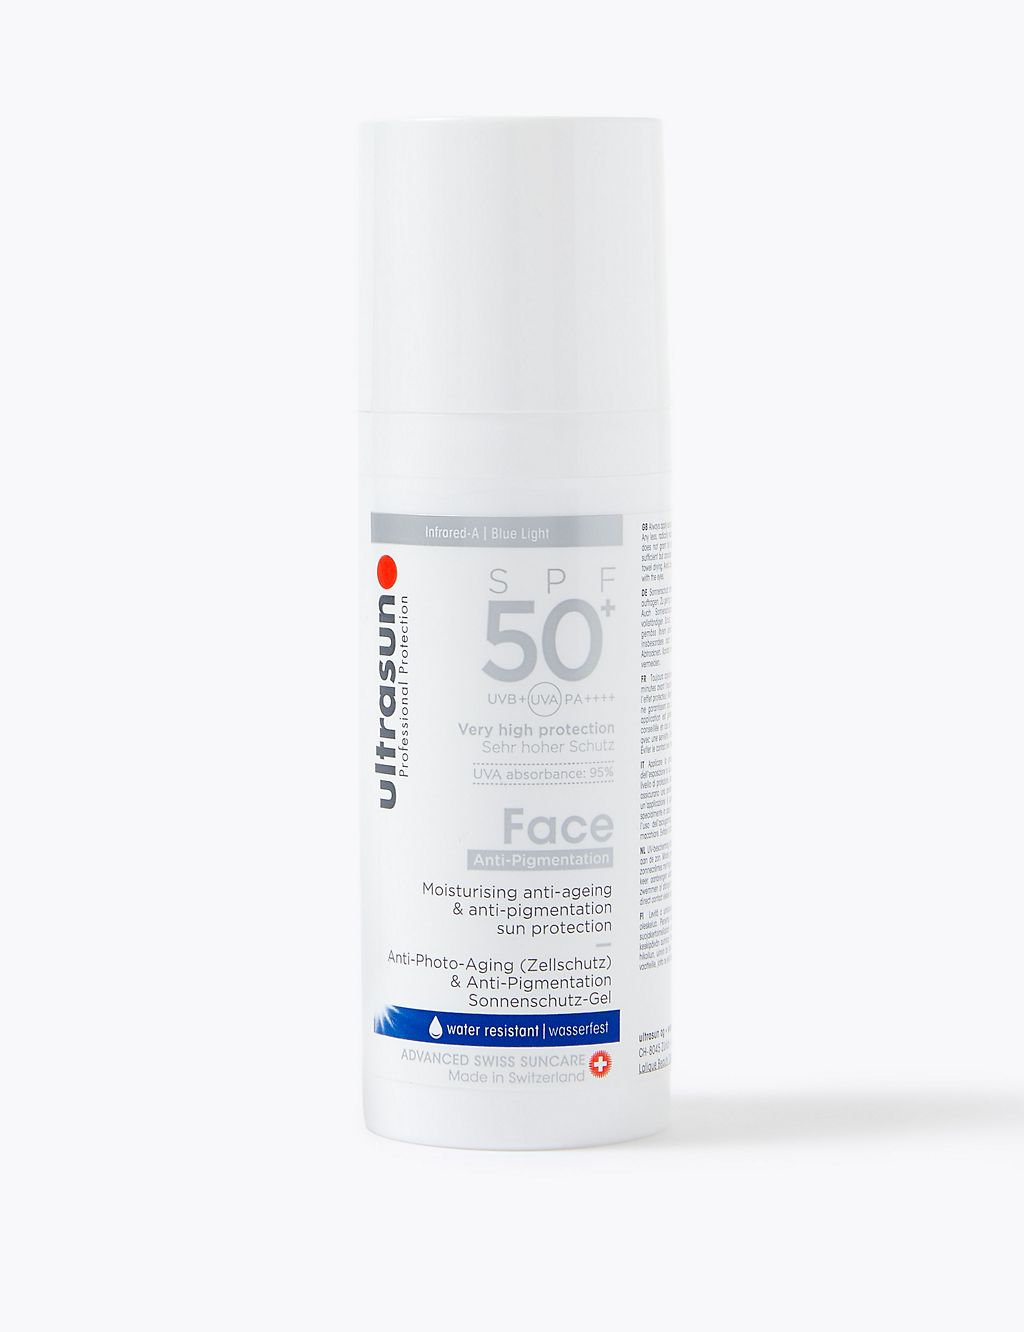 Face Anti-Pigmentation Cream SPF 50+ 50ml 4 of 4